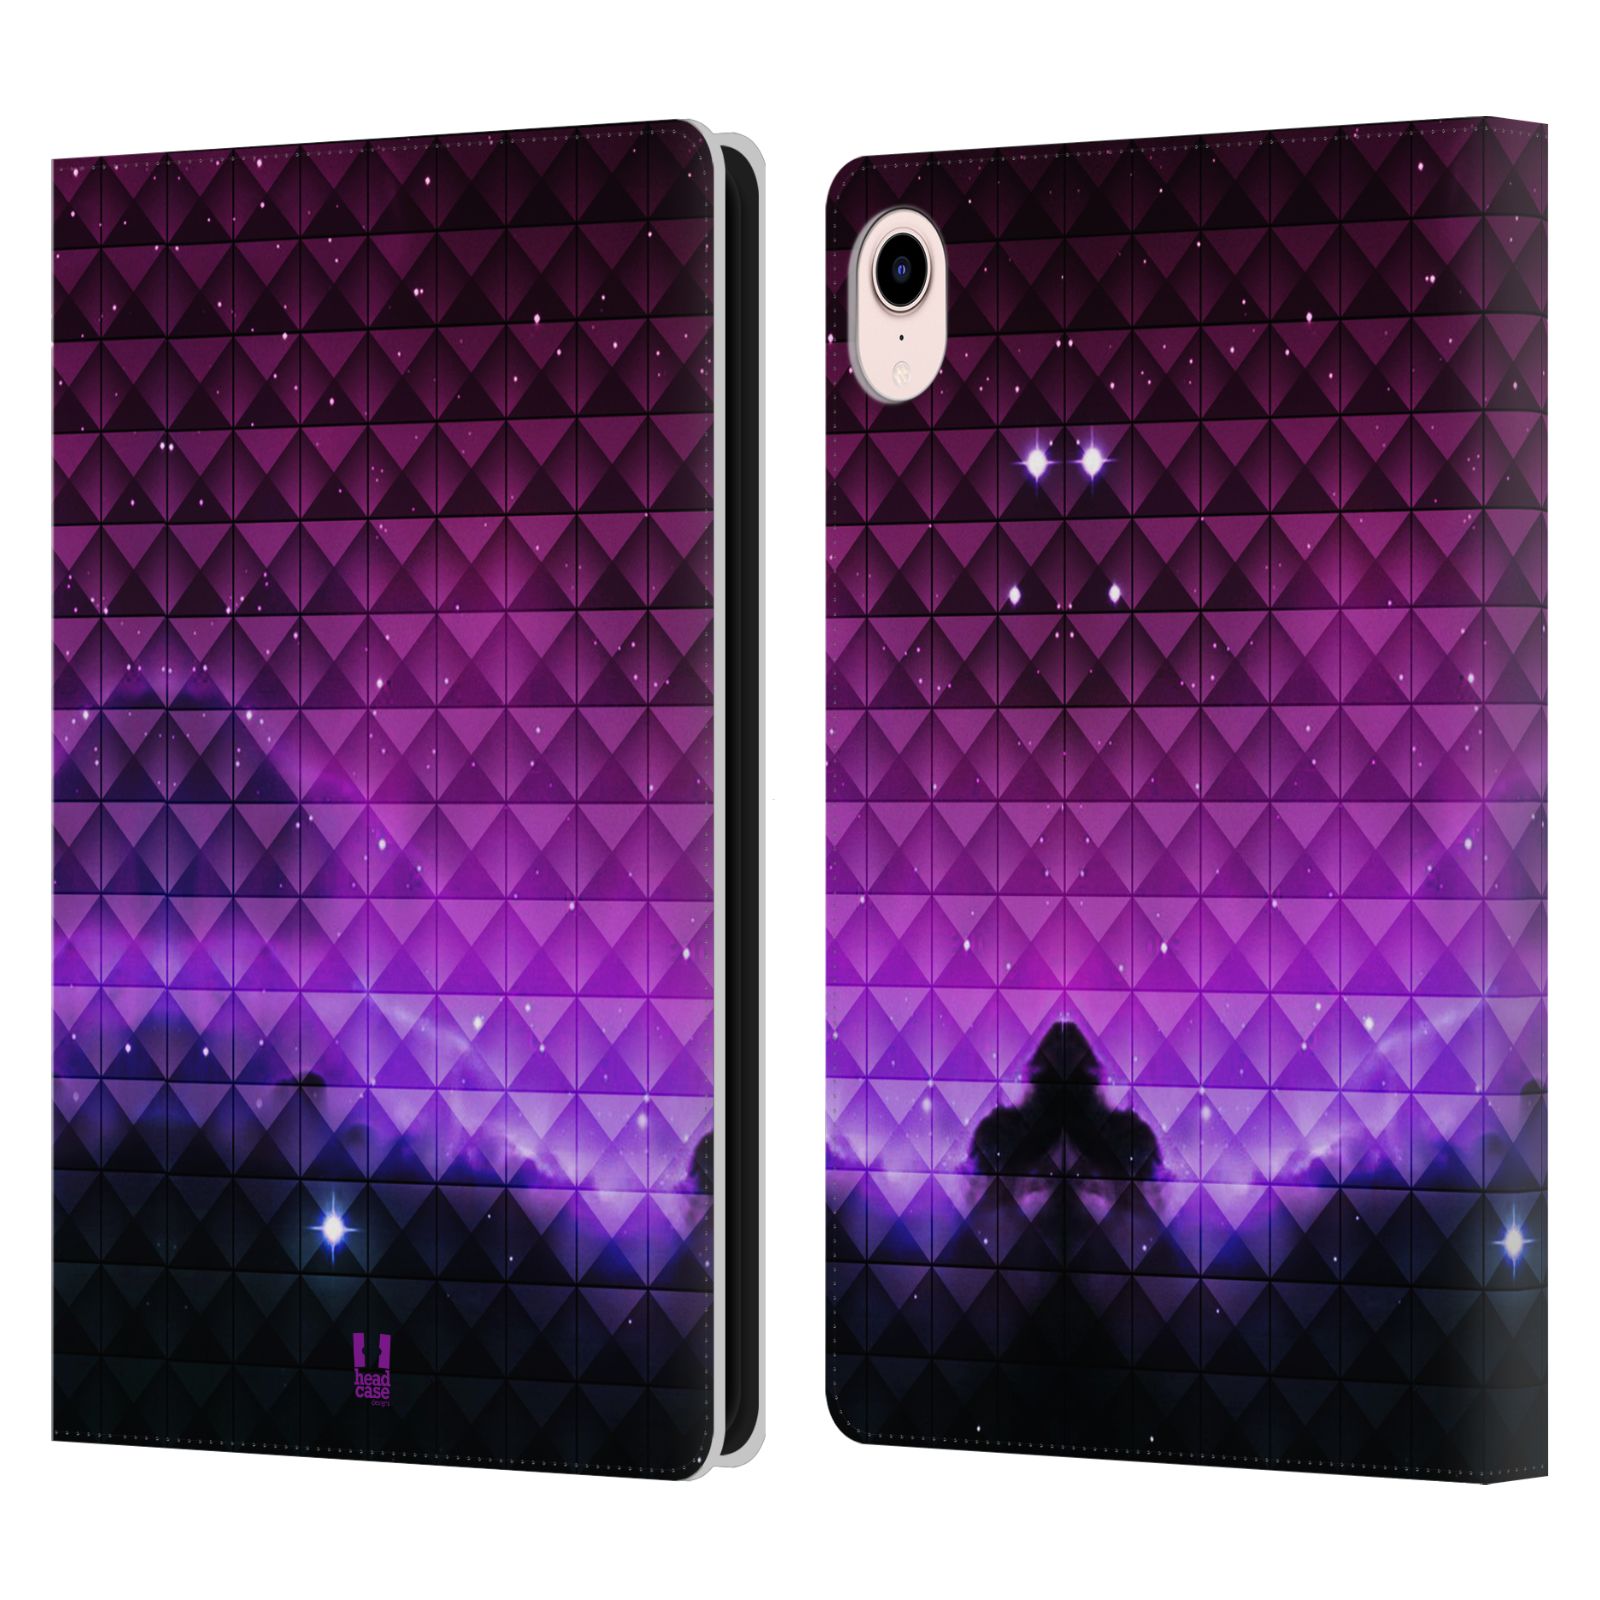 Pouzdro pro tablet Apple Ipad MINI (2021) - HEAD CASE - barevná vesmírná mlhovina fialová a černá